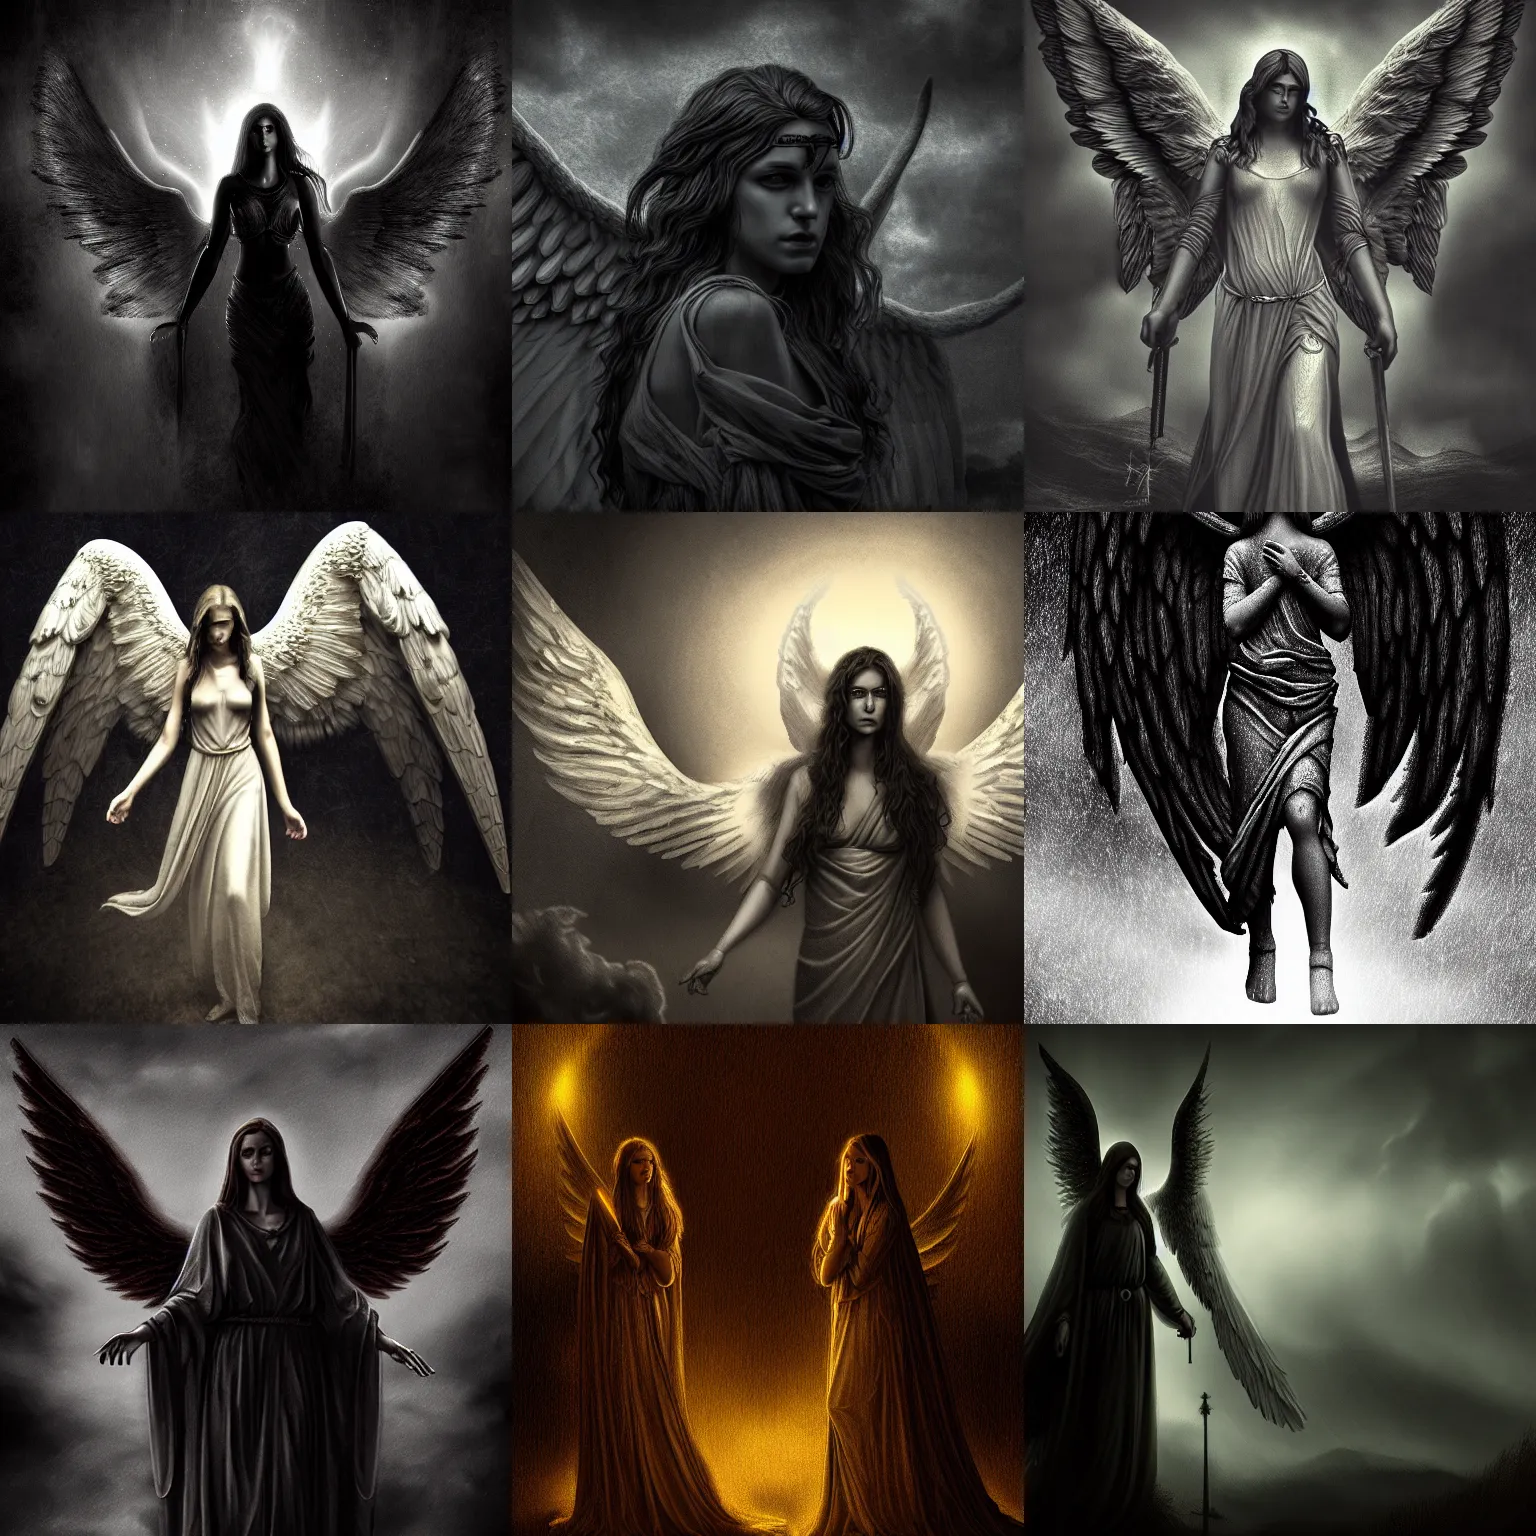 Prompt: biblically accurate angels, highly detailed digital art, dark atmosphere, dark colors, dark fantasy, moody lighting, 8 k, intricate